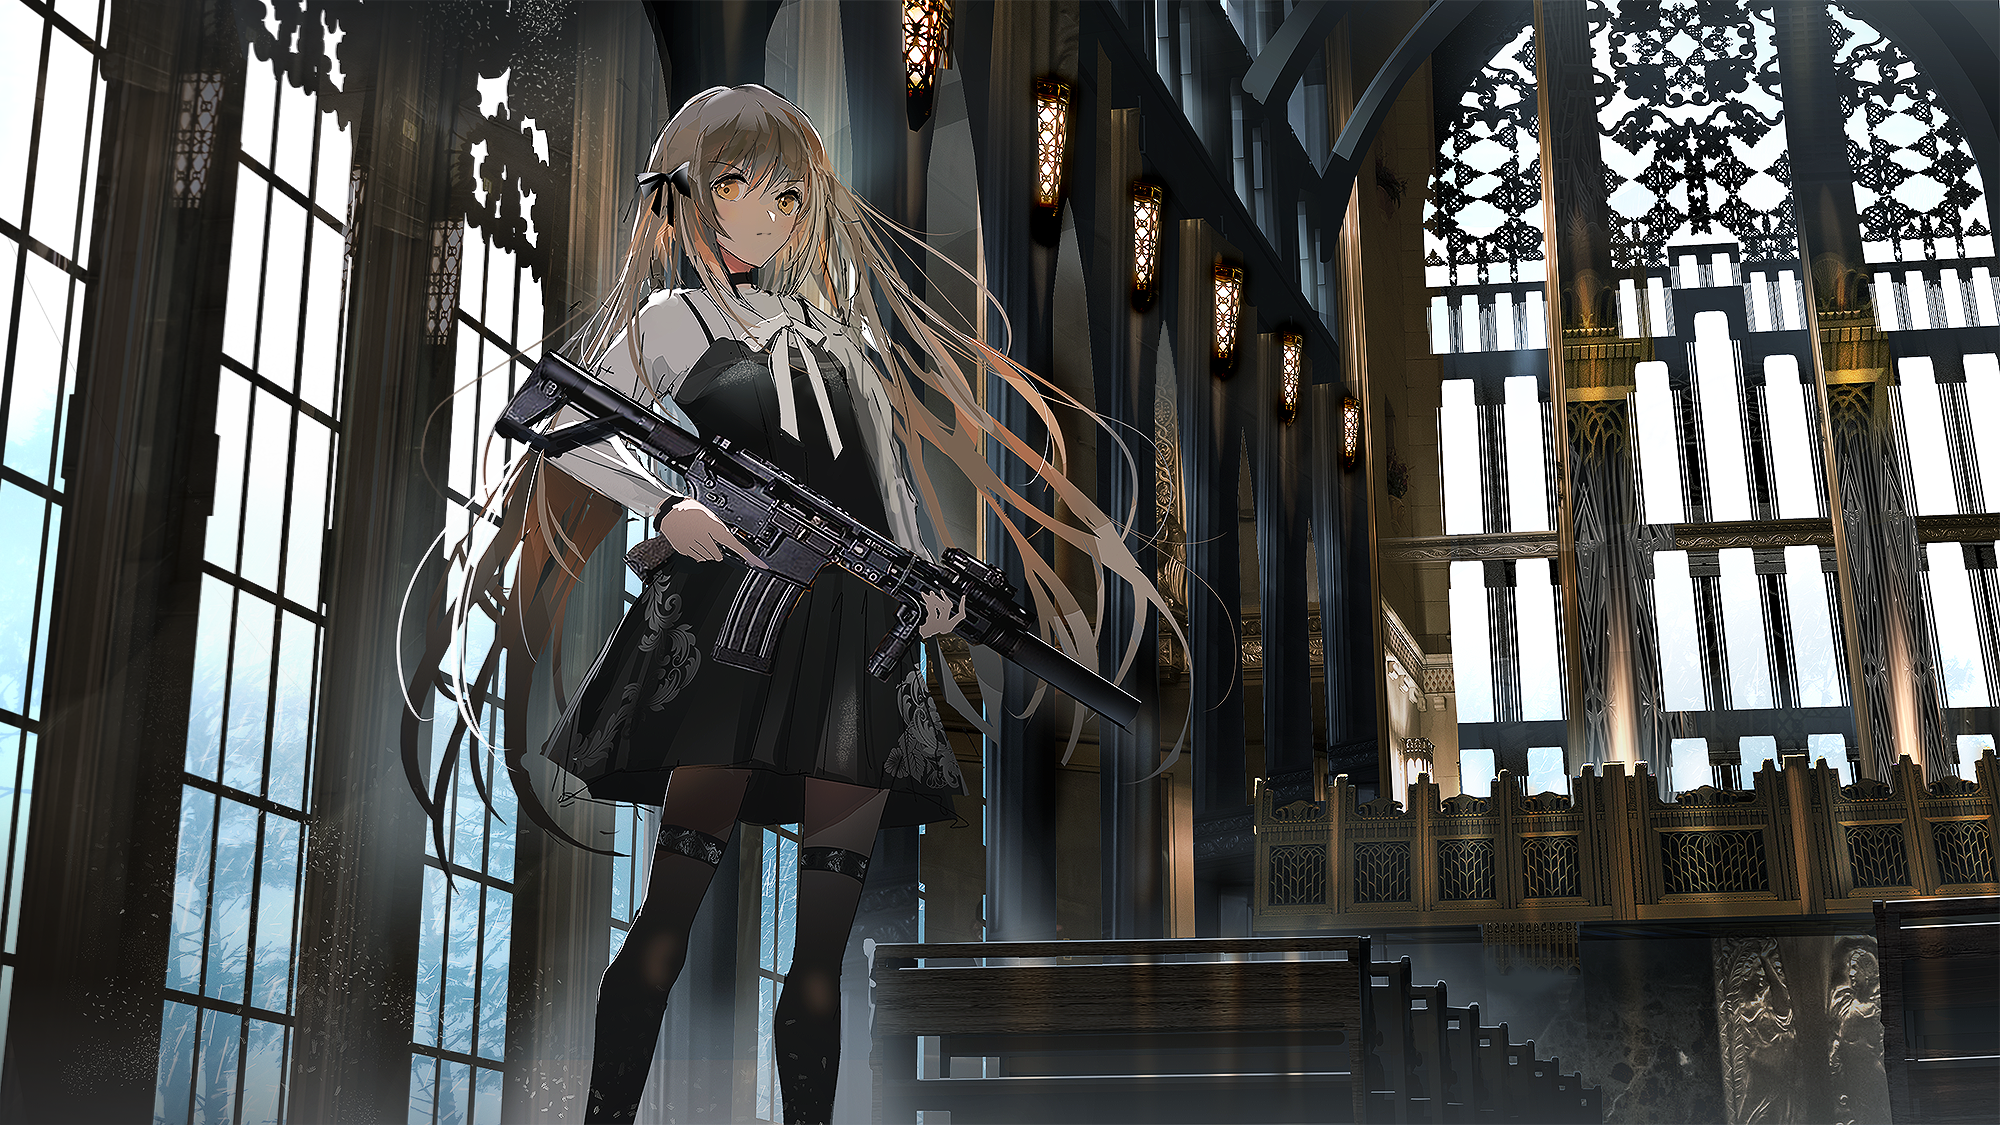 Wallpaper : illustration, gun, long hair, anime girls 